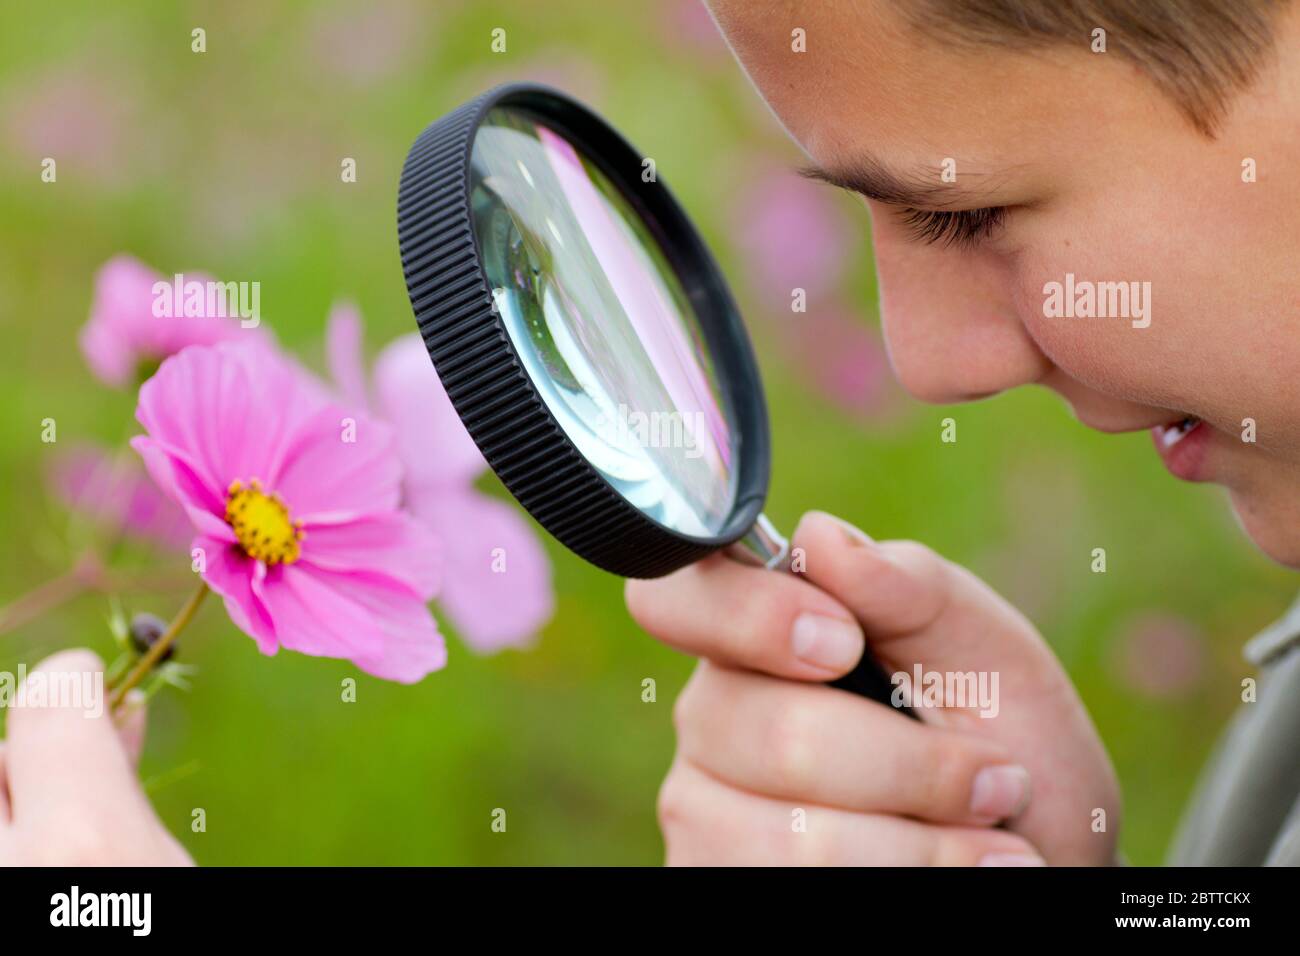 Junge betrachtet Blume durch eine Lupe, MR: Oui Banque D'Images